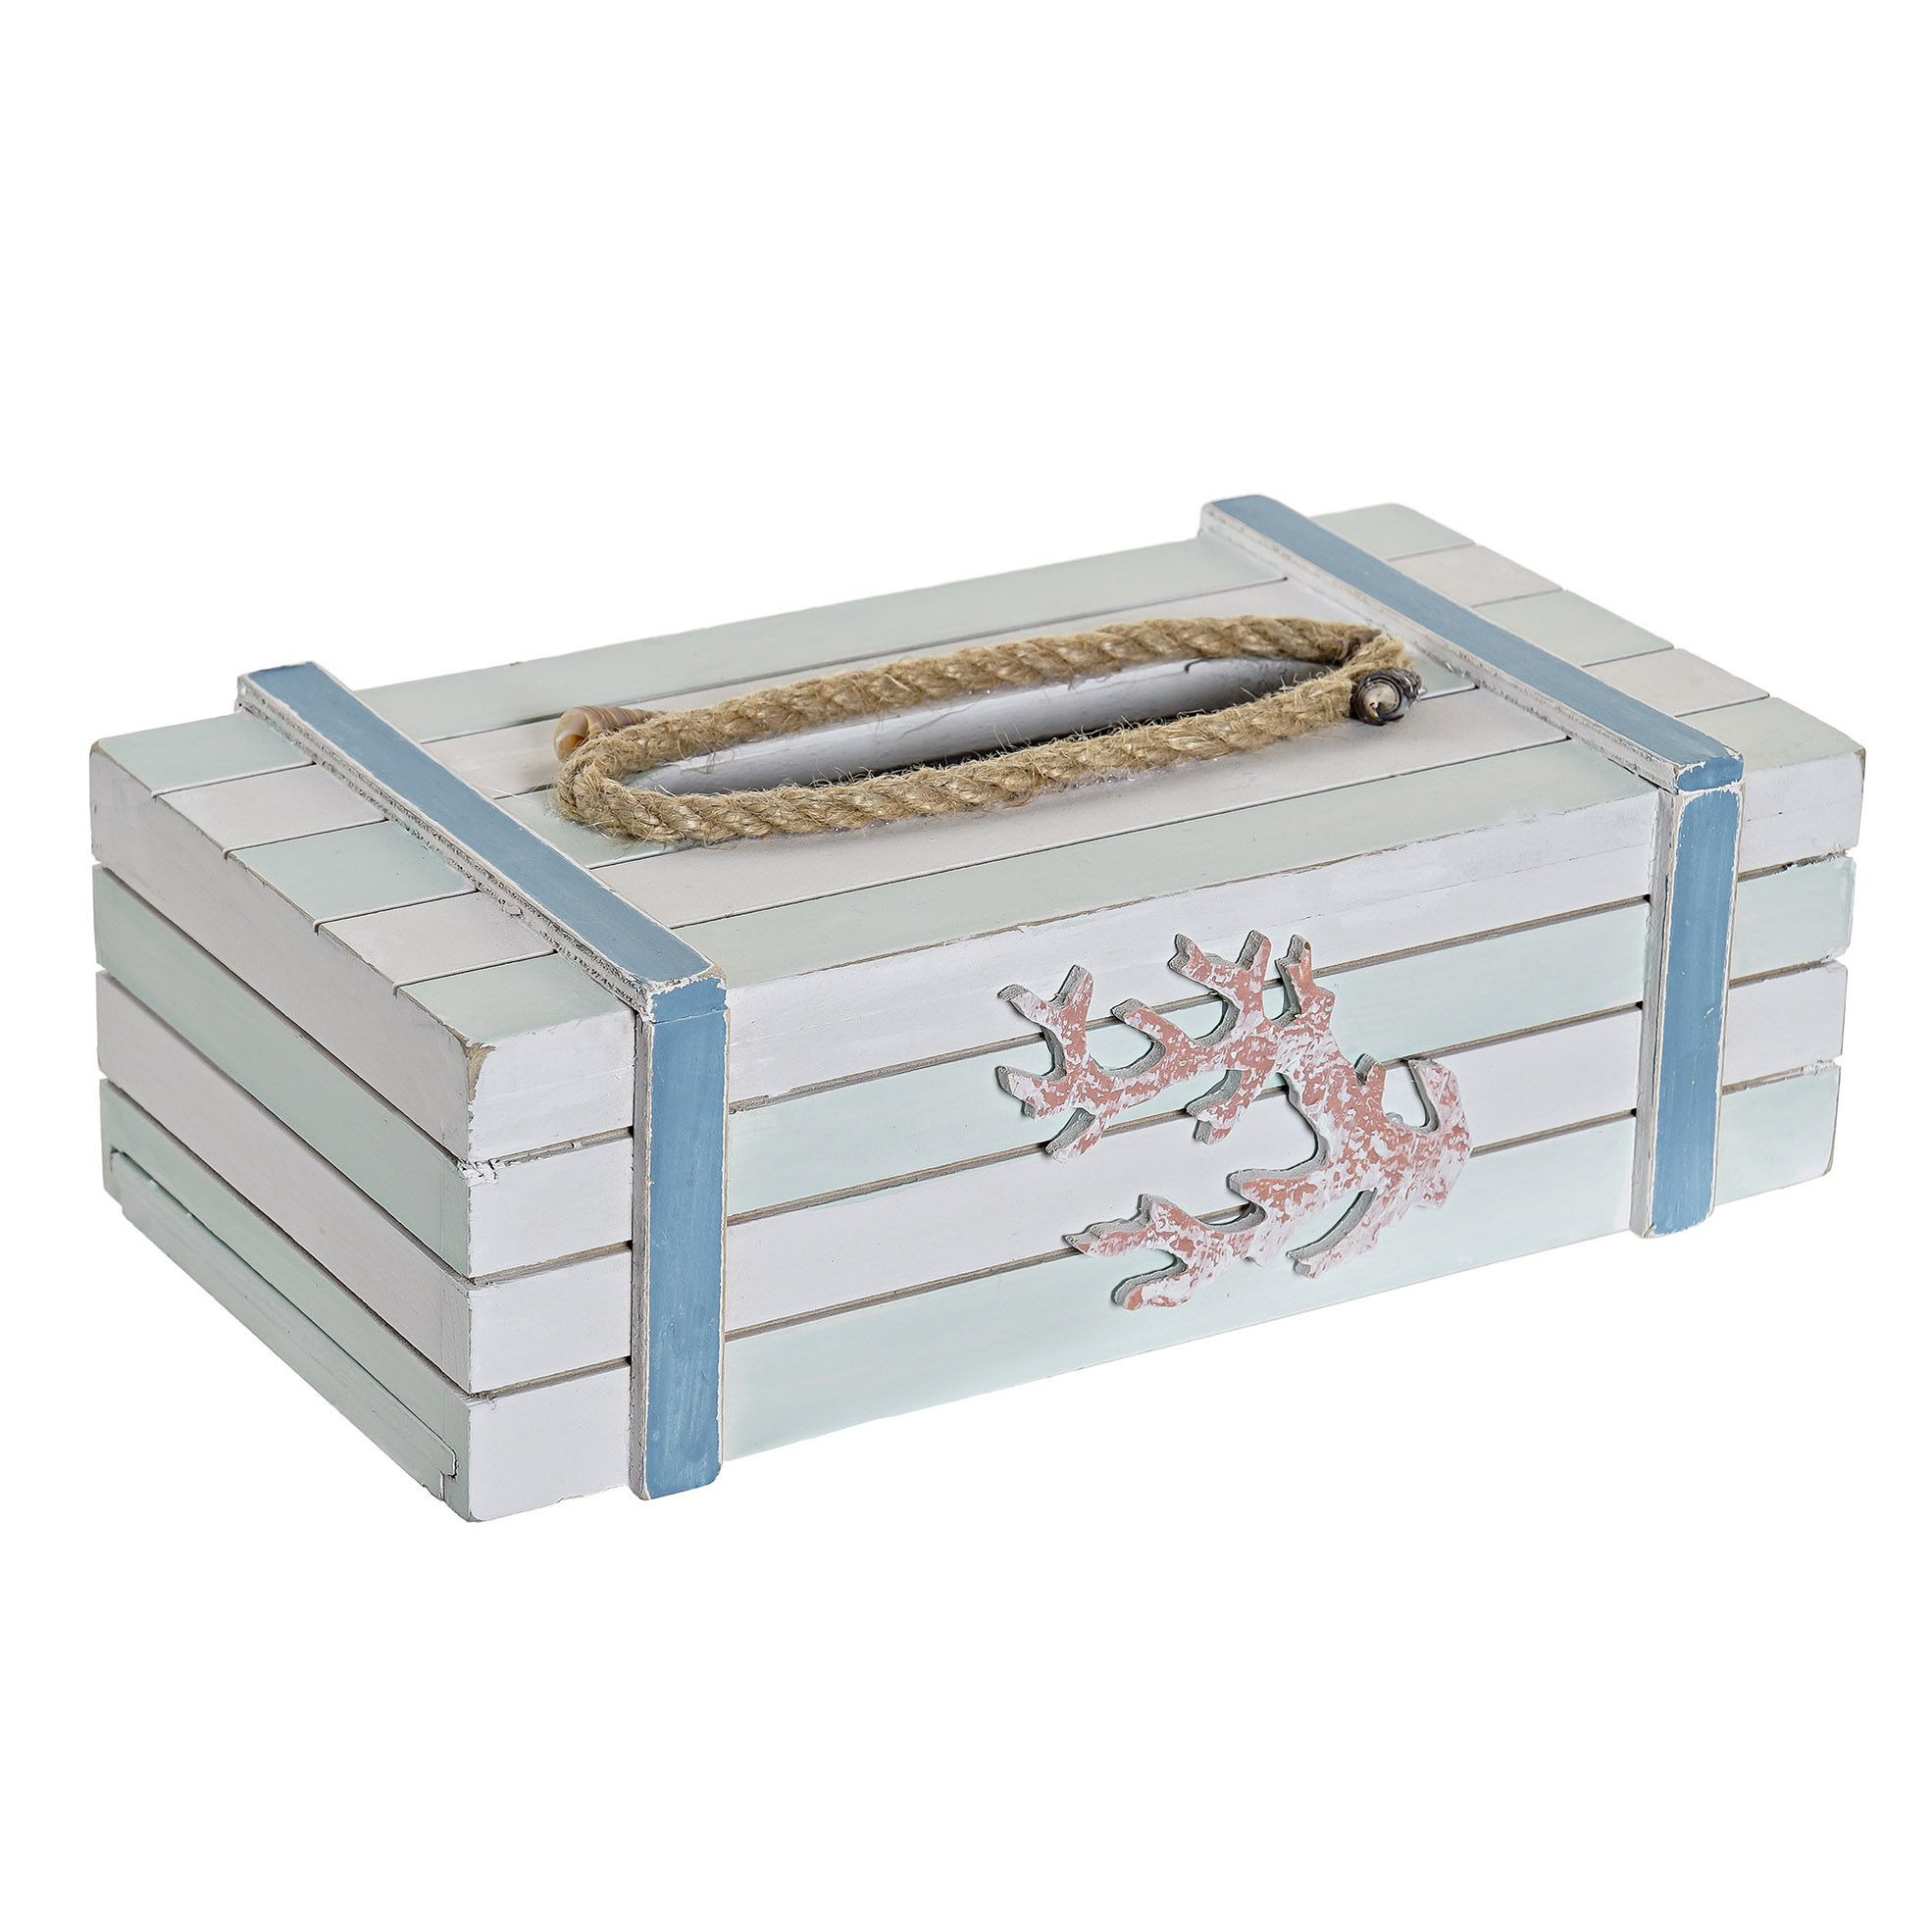 Tissuedoos-tissuebox wit rechthoekig van hout 22 x 14 x 8 cm